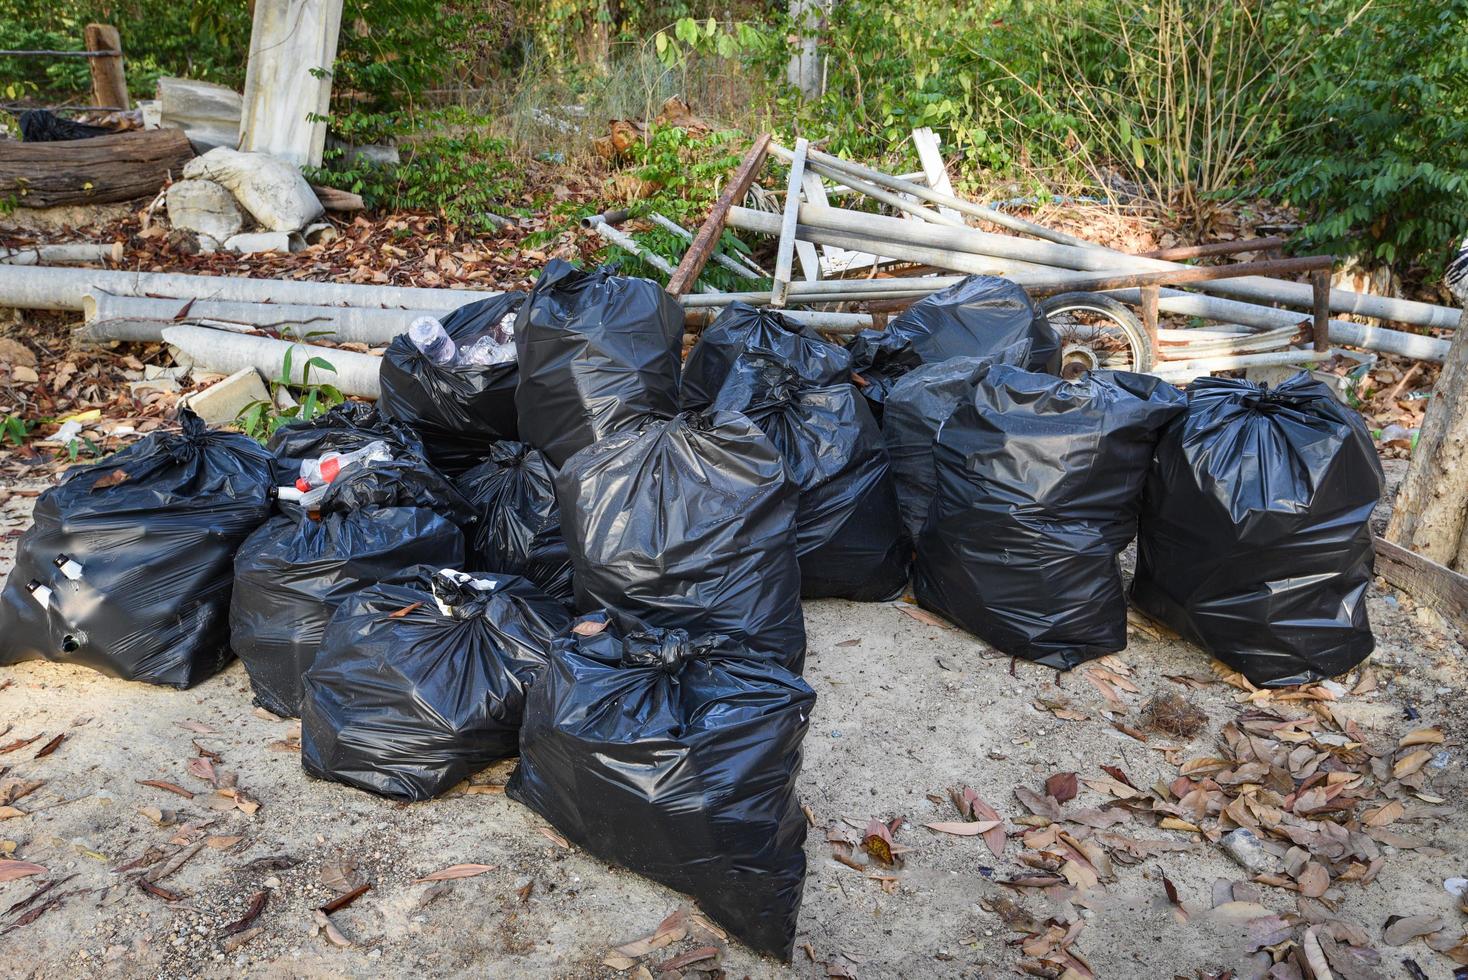 tas de sacs en plastique à ordures dans le sac à ordures nature en attente de collecte de recyclage - pollution du concept de gestion des déchets photo